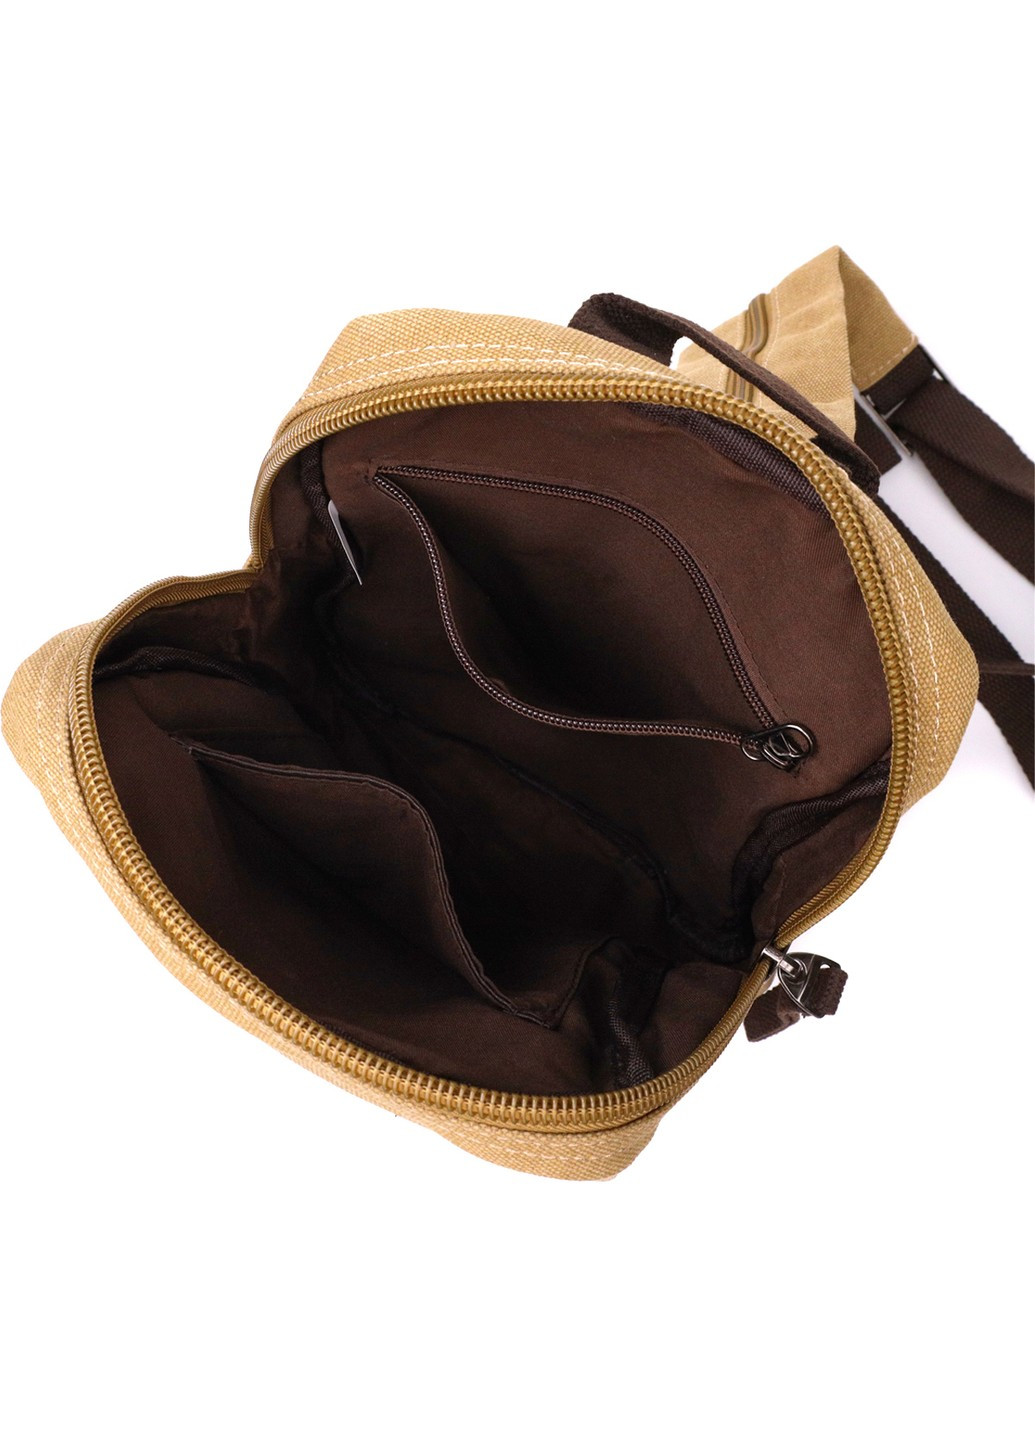 Удобный рюкзак для мужчин из плотного текстиля 22185 Песочный Vintage (267925320)